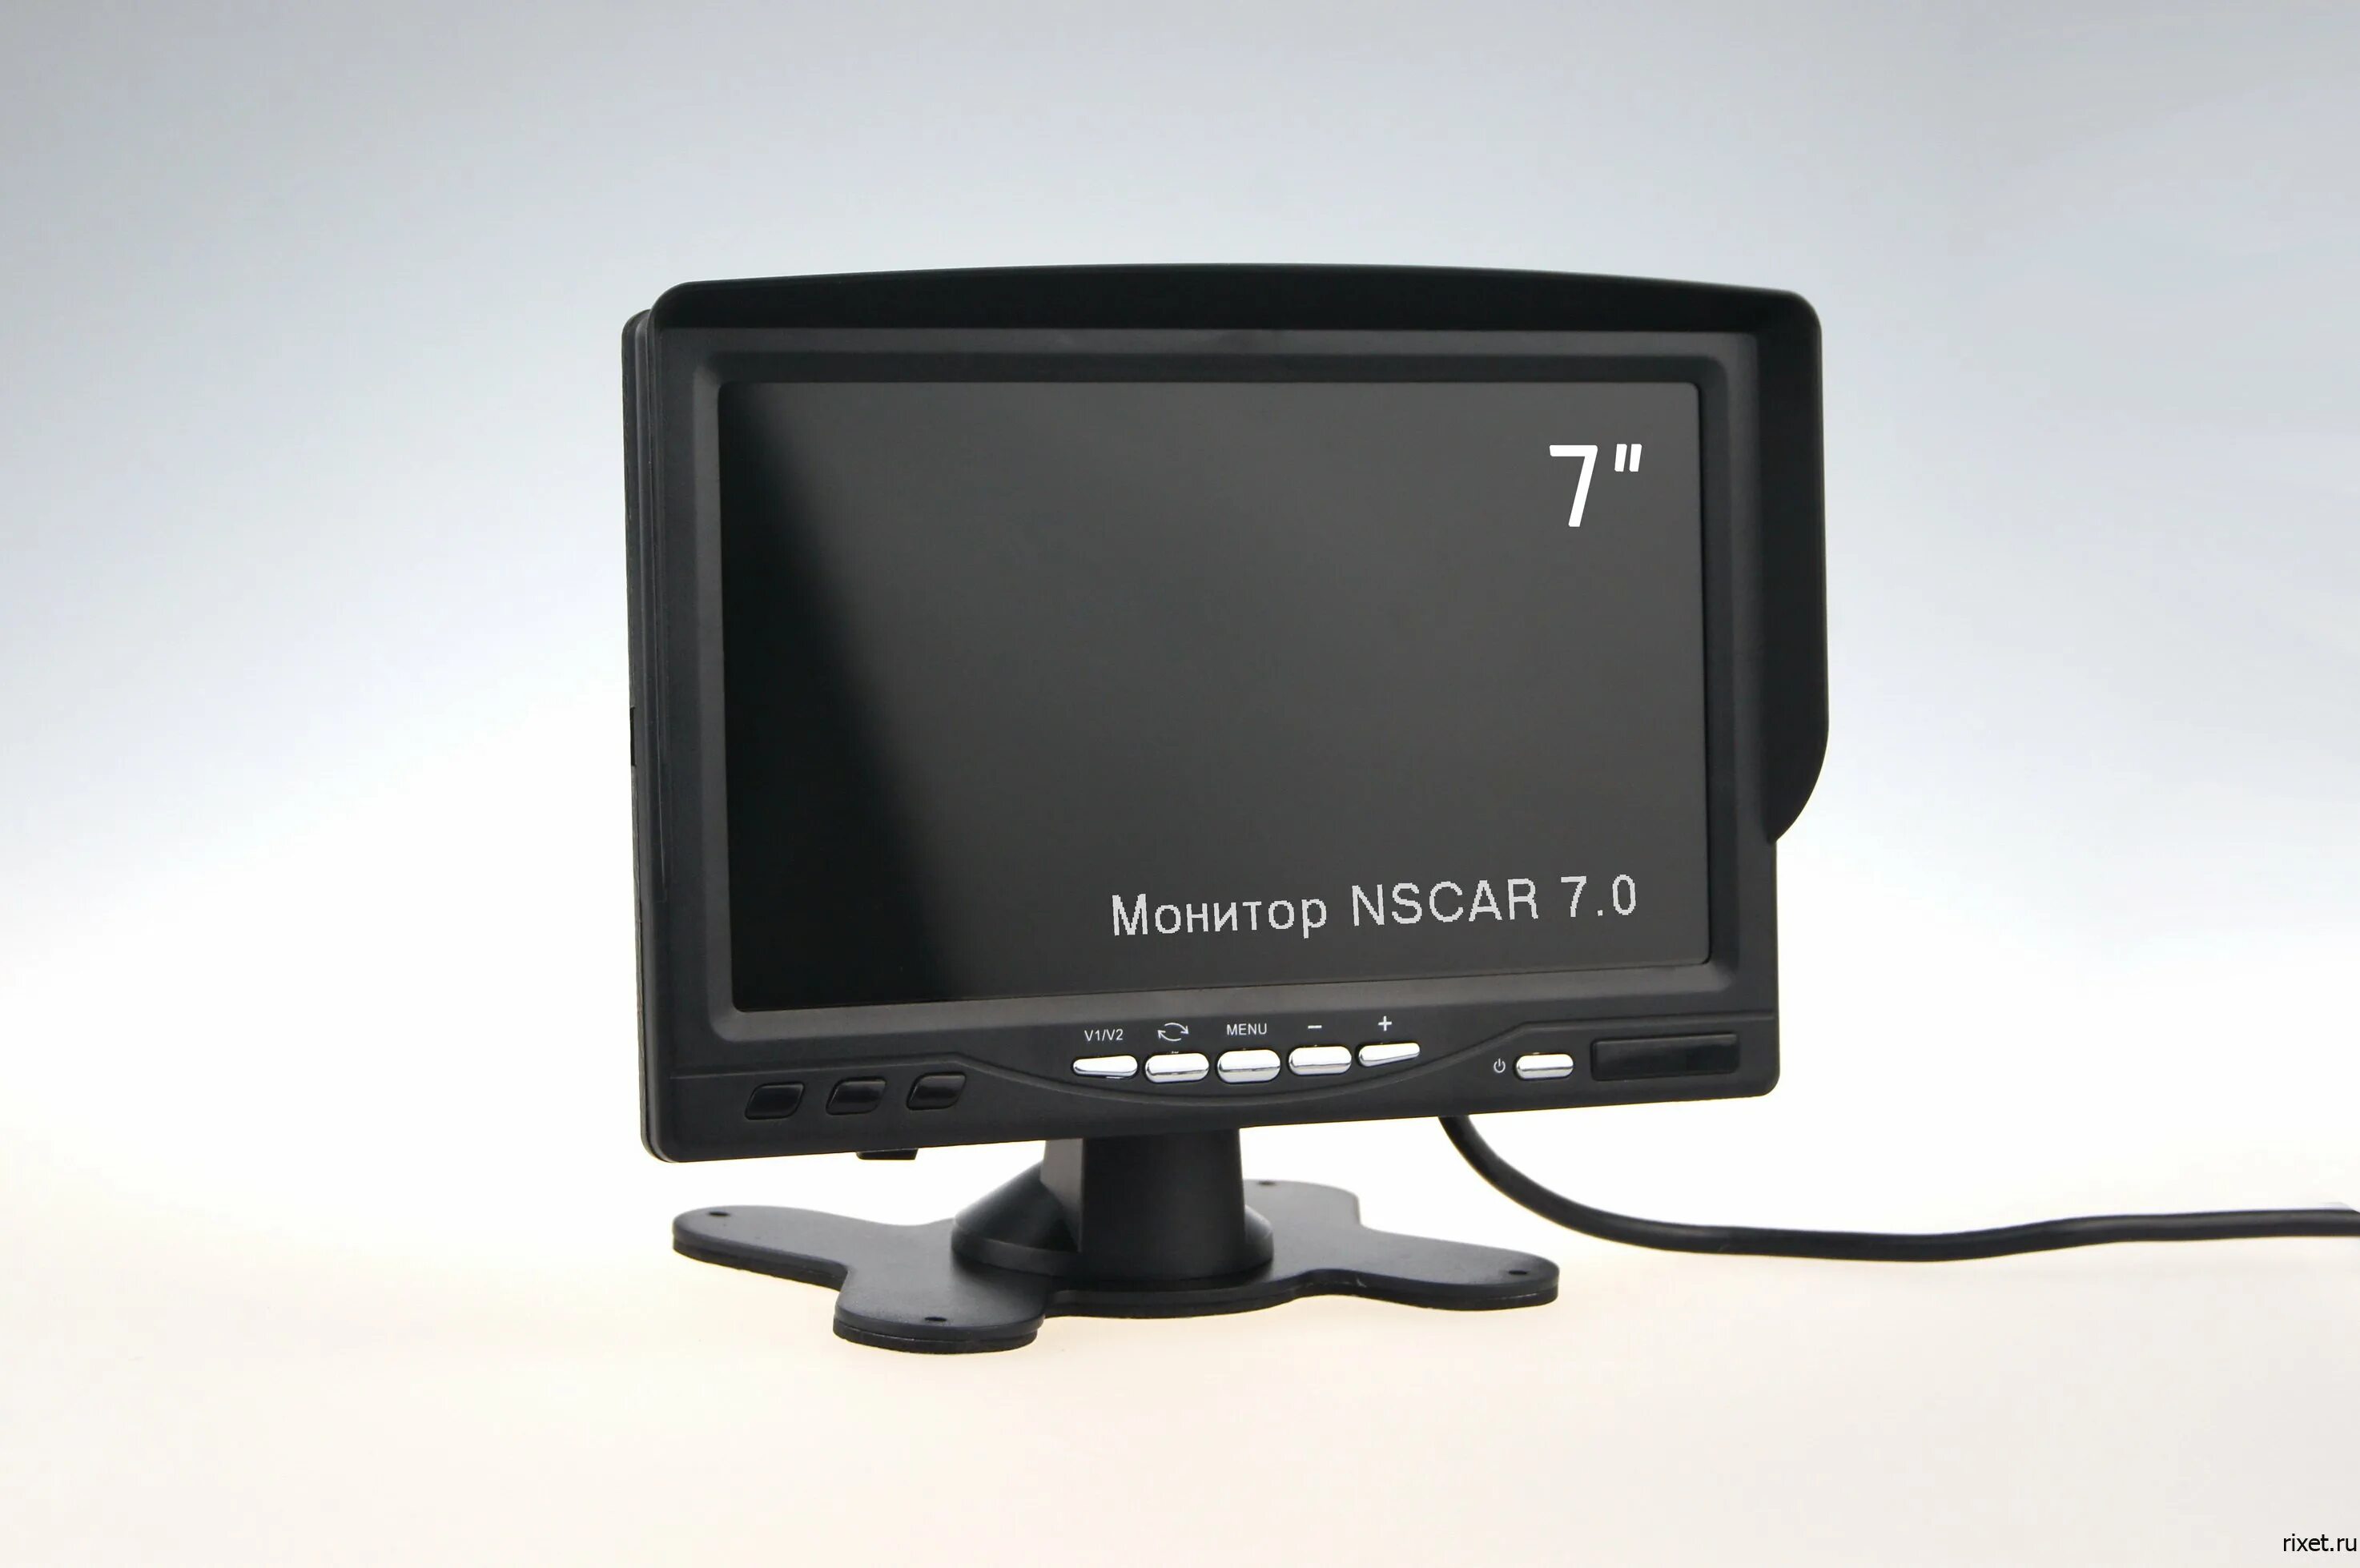 Монитор NSCAR 7. Комплект 7" монитор-Квадратор+4 камеры. Монитор для видеорегистратора NSCAR7.0. Квадратор NSCAR 402. Мониторы для камер 7